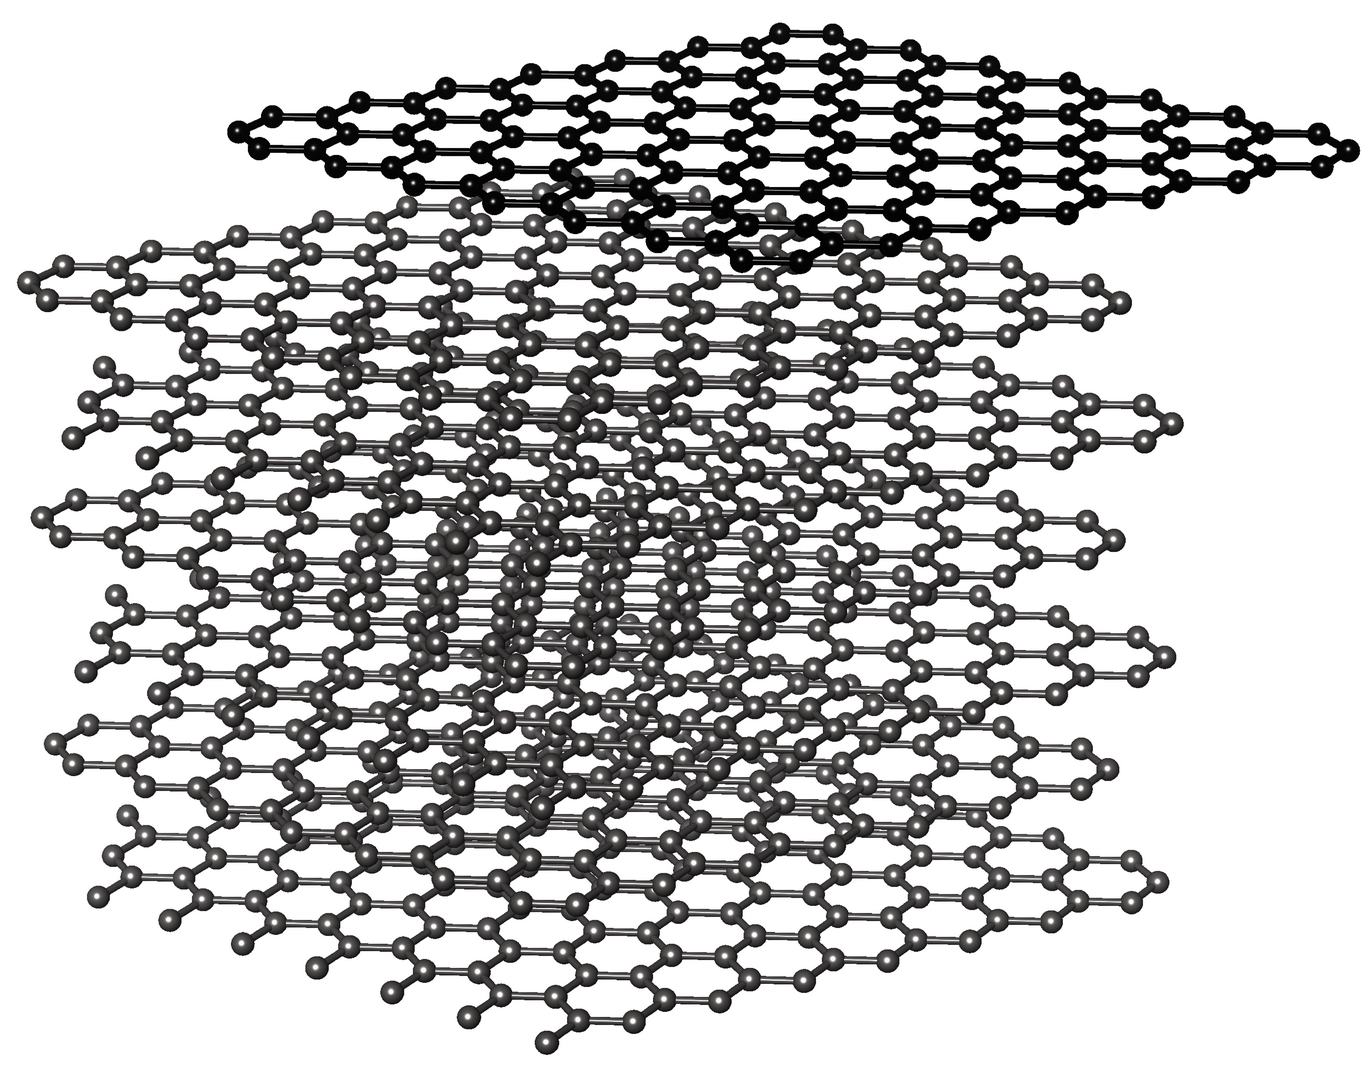 Mehrere hellgraue hexagonale Gitter liegen übereinander. Ganz oben ist eine einzelne dunkelgraue Schicht.